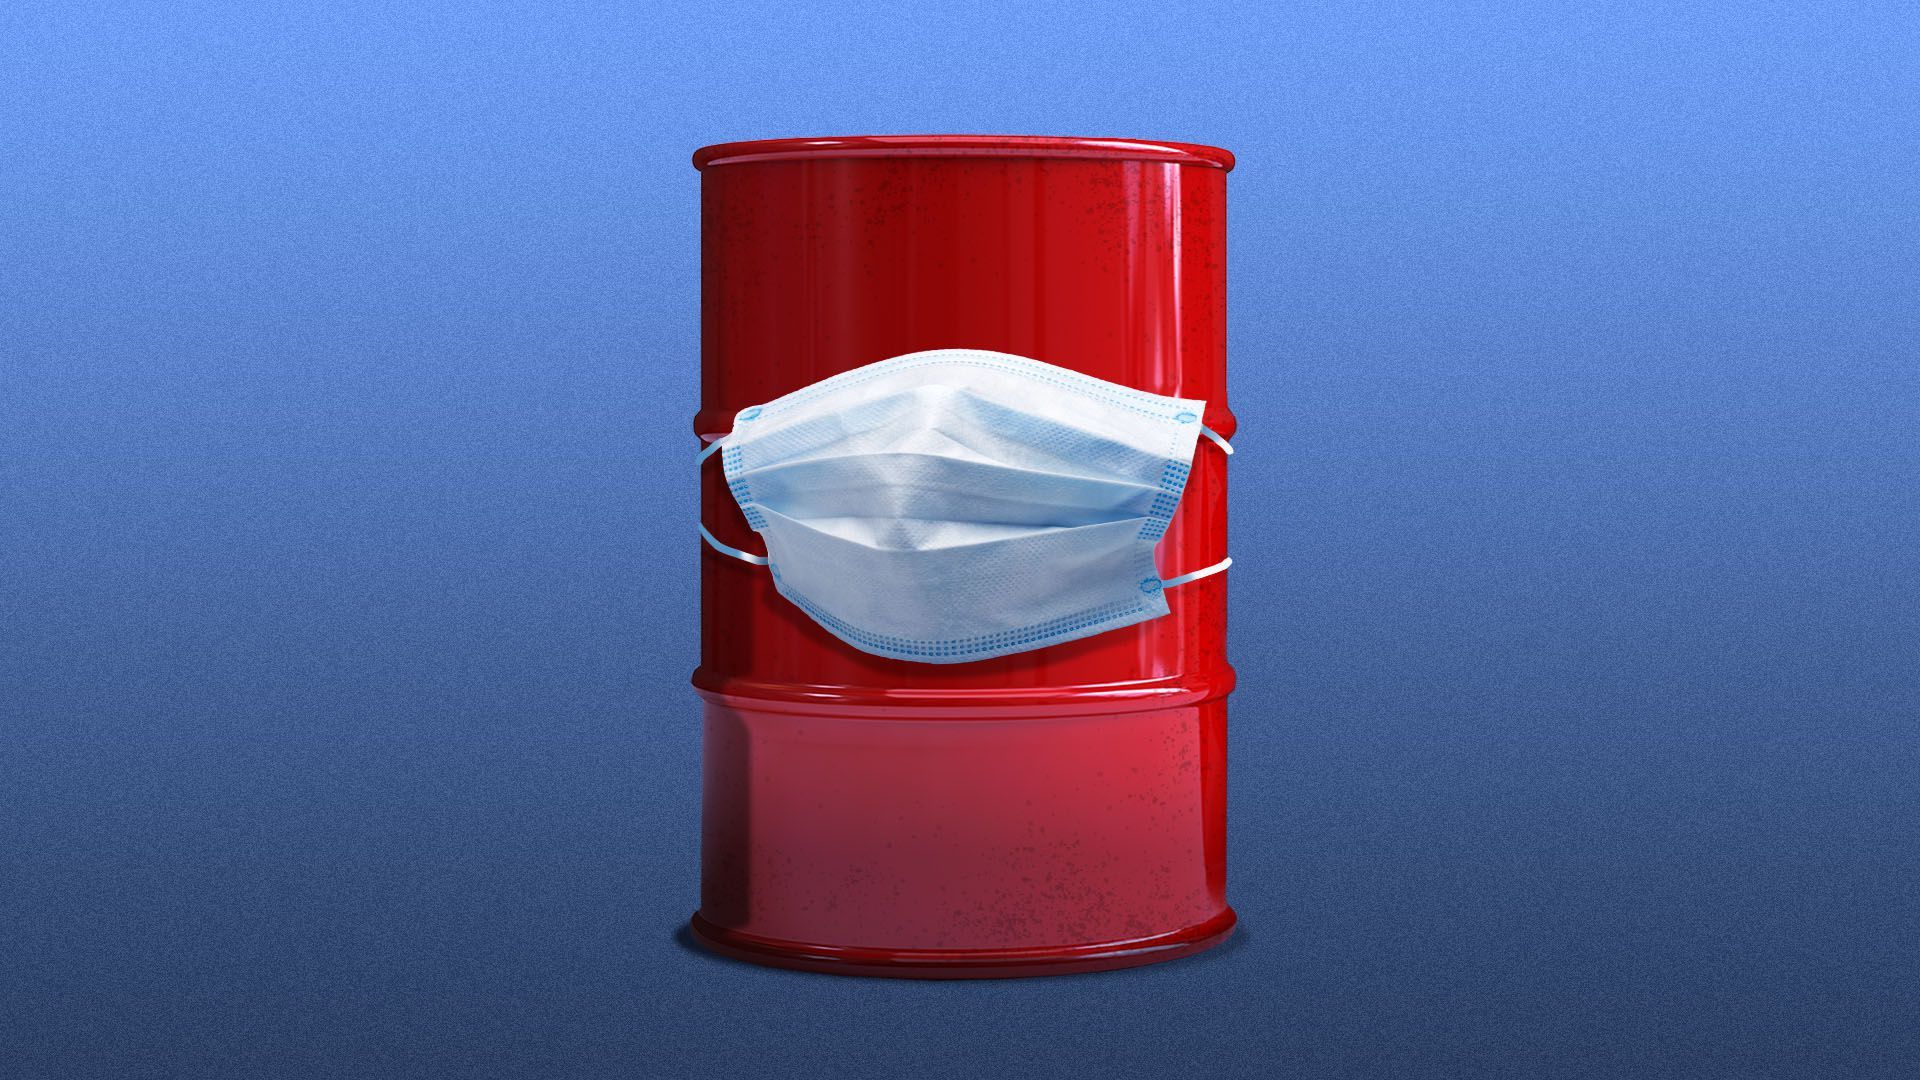 Illustration of an oil barrel wearing a medical mask